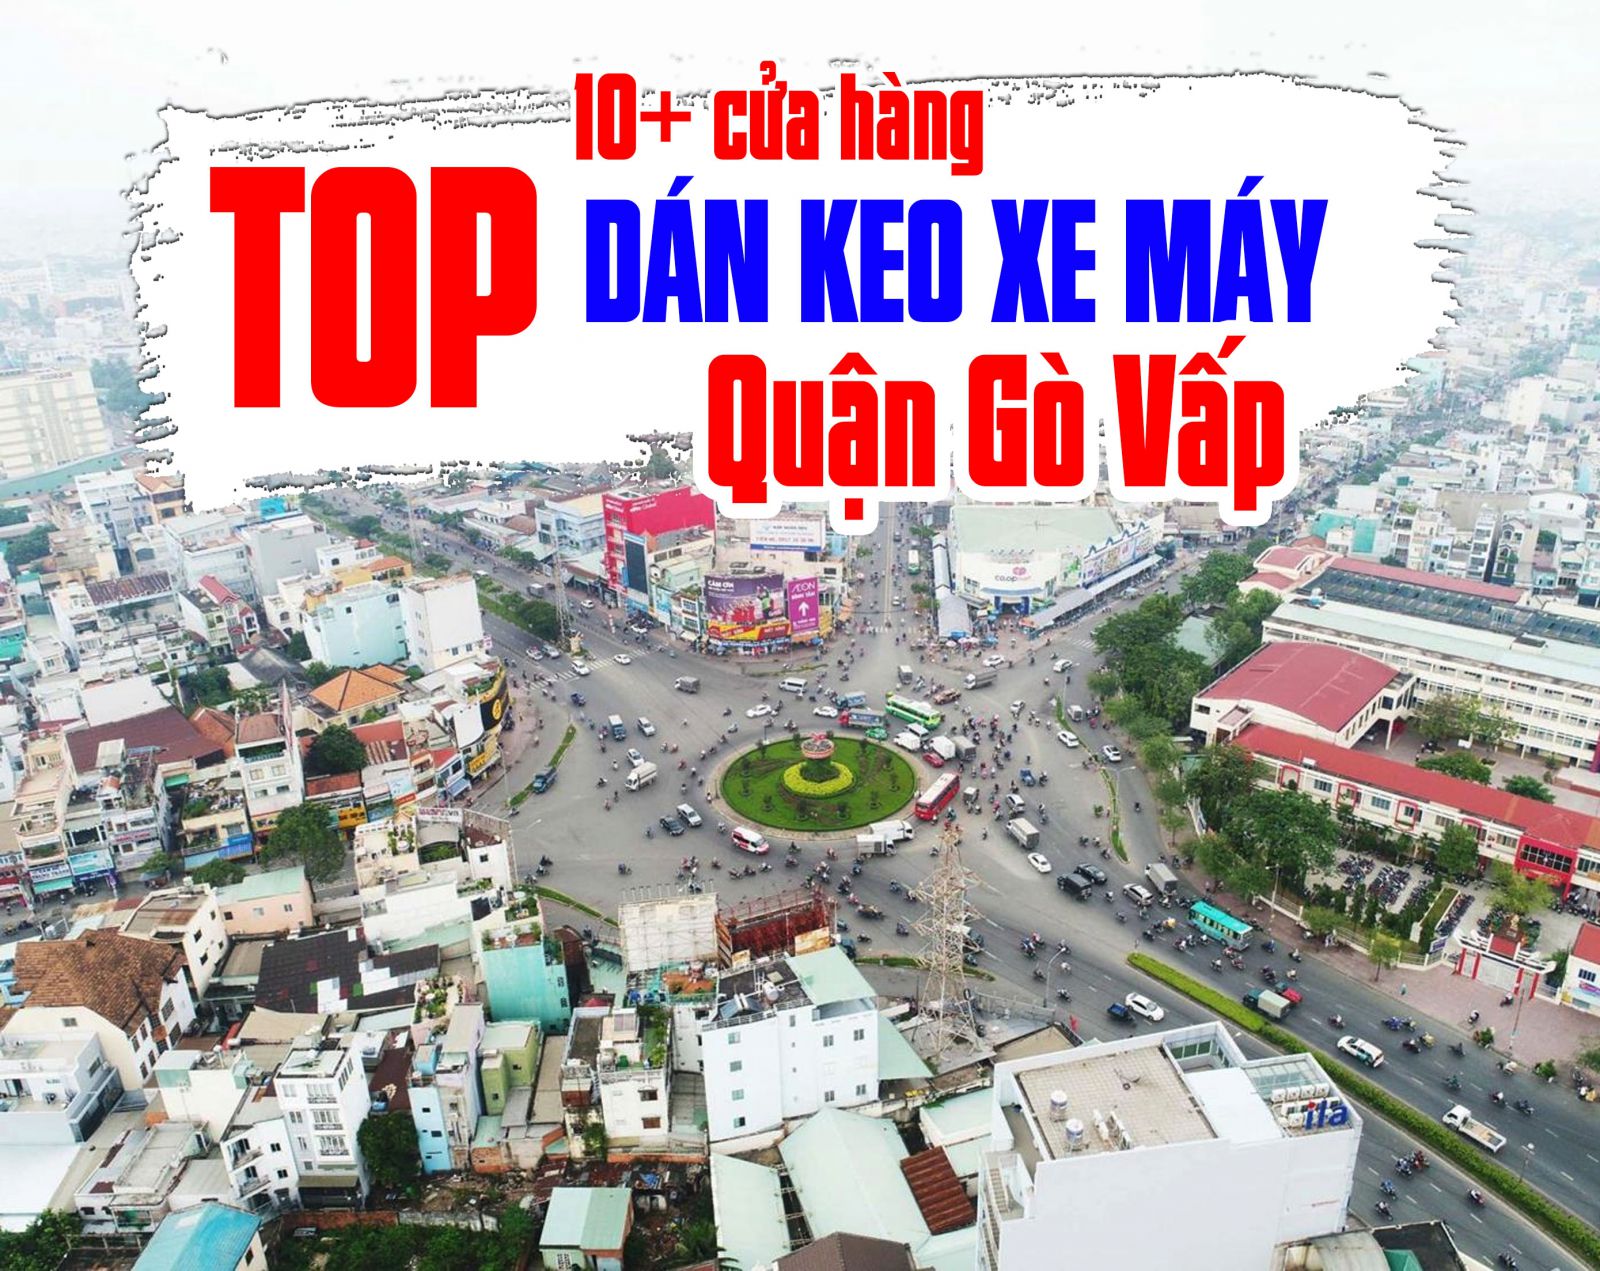 Danh sách TOP 10+ tiệm dán decal xe máy tại quận Phú Nhuận uy tín, chất lượng 2023 uy tín và chất lượng được Lê Thanh Decal tổng hợp đầy đủ và chi tiết. Tìm hiểu ngay để lựa chọn cửa hàng phù hợp nhất cho mình nhé !